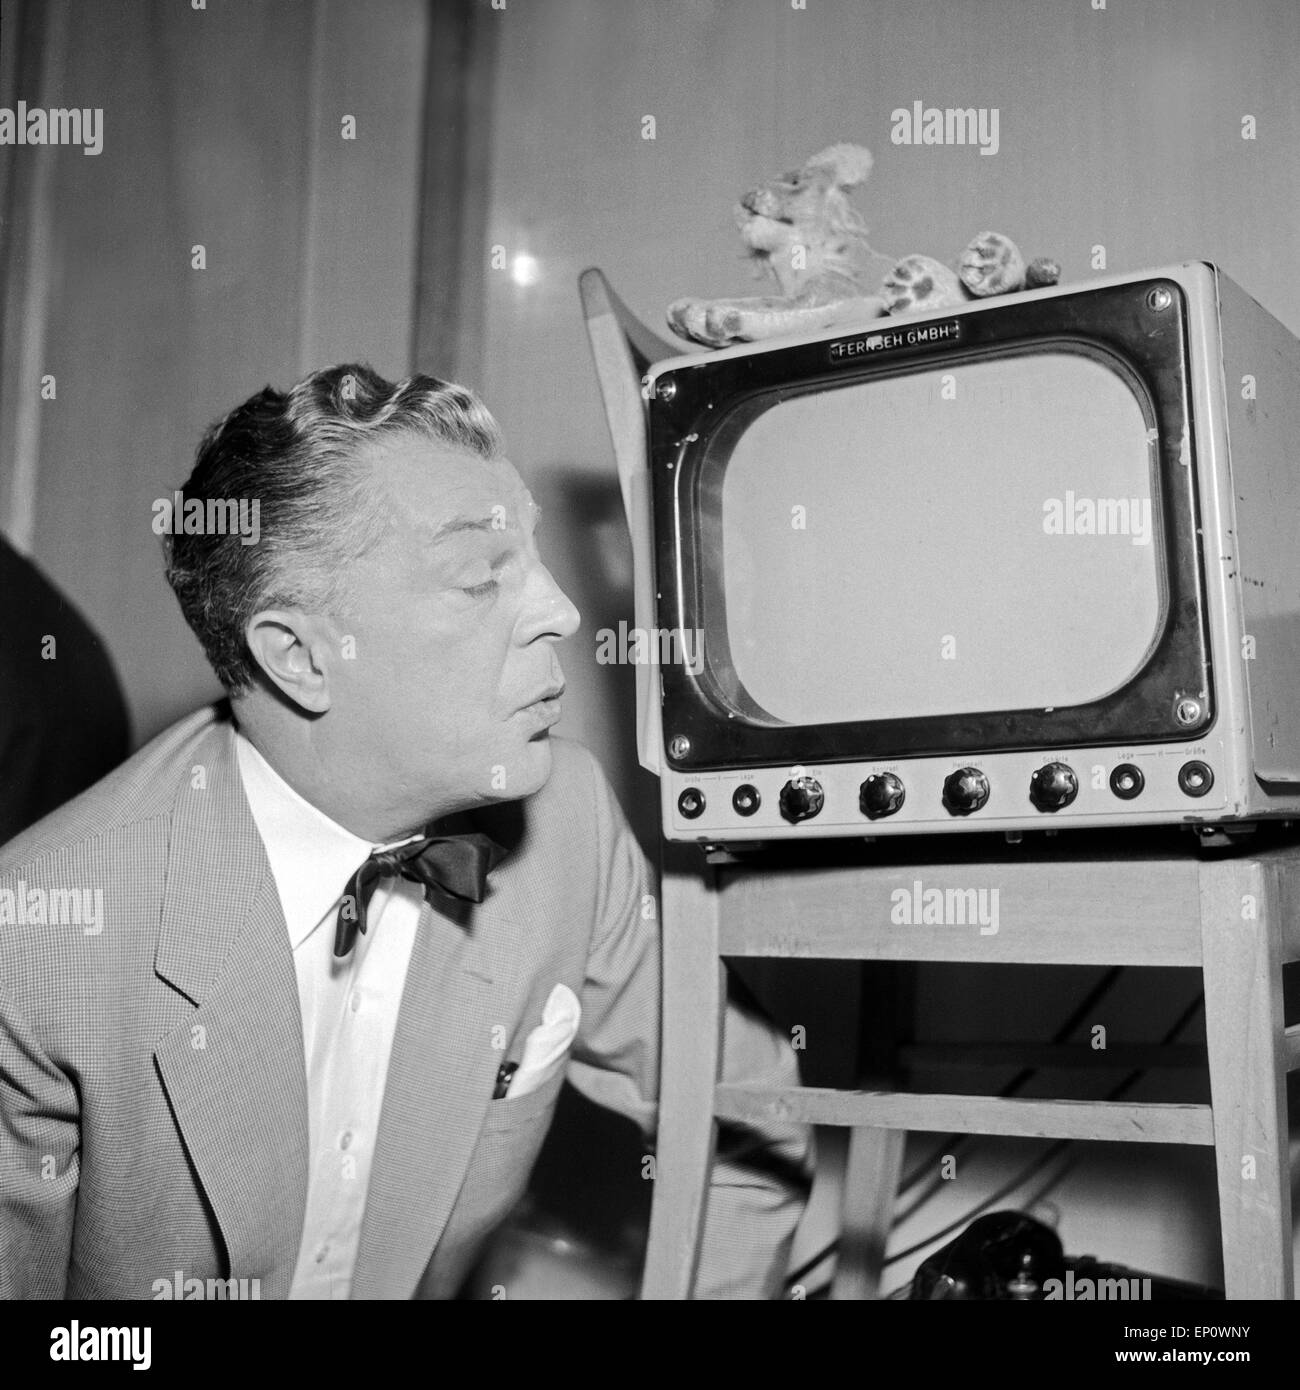 Viktor de Kowa ein Einem Kleinen Telefunken Fernseher, Hamburg 1956.  Deutscher Schauspieler Viktor de Kowa und einen kleinen Telefunken TV  Stockfotografie - Alamy